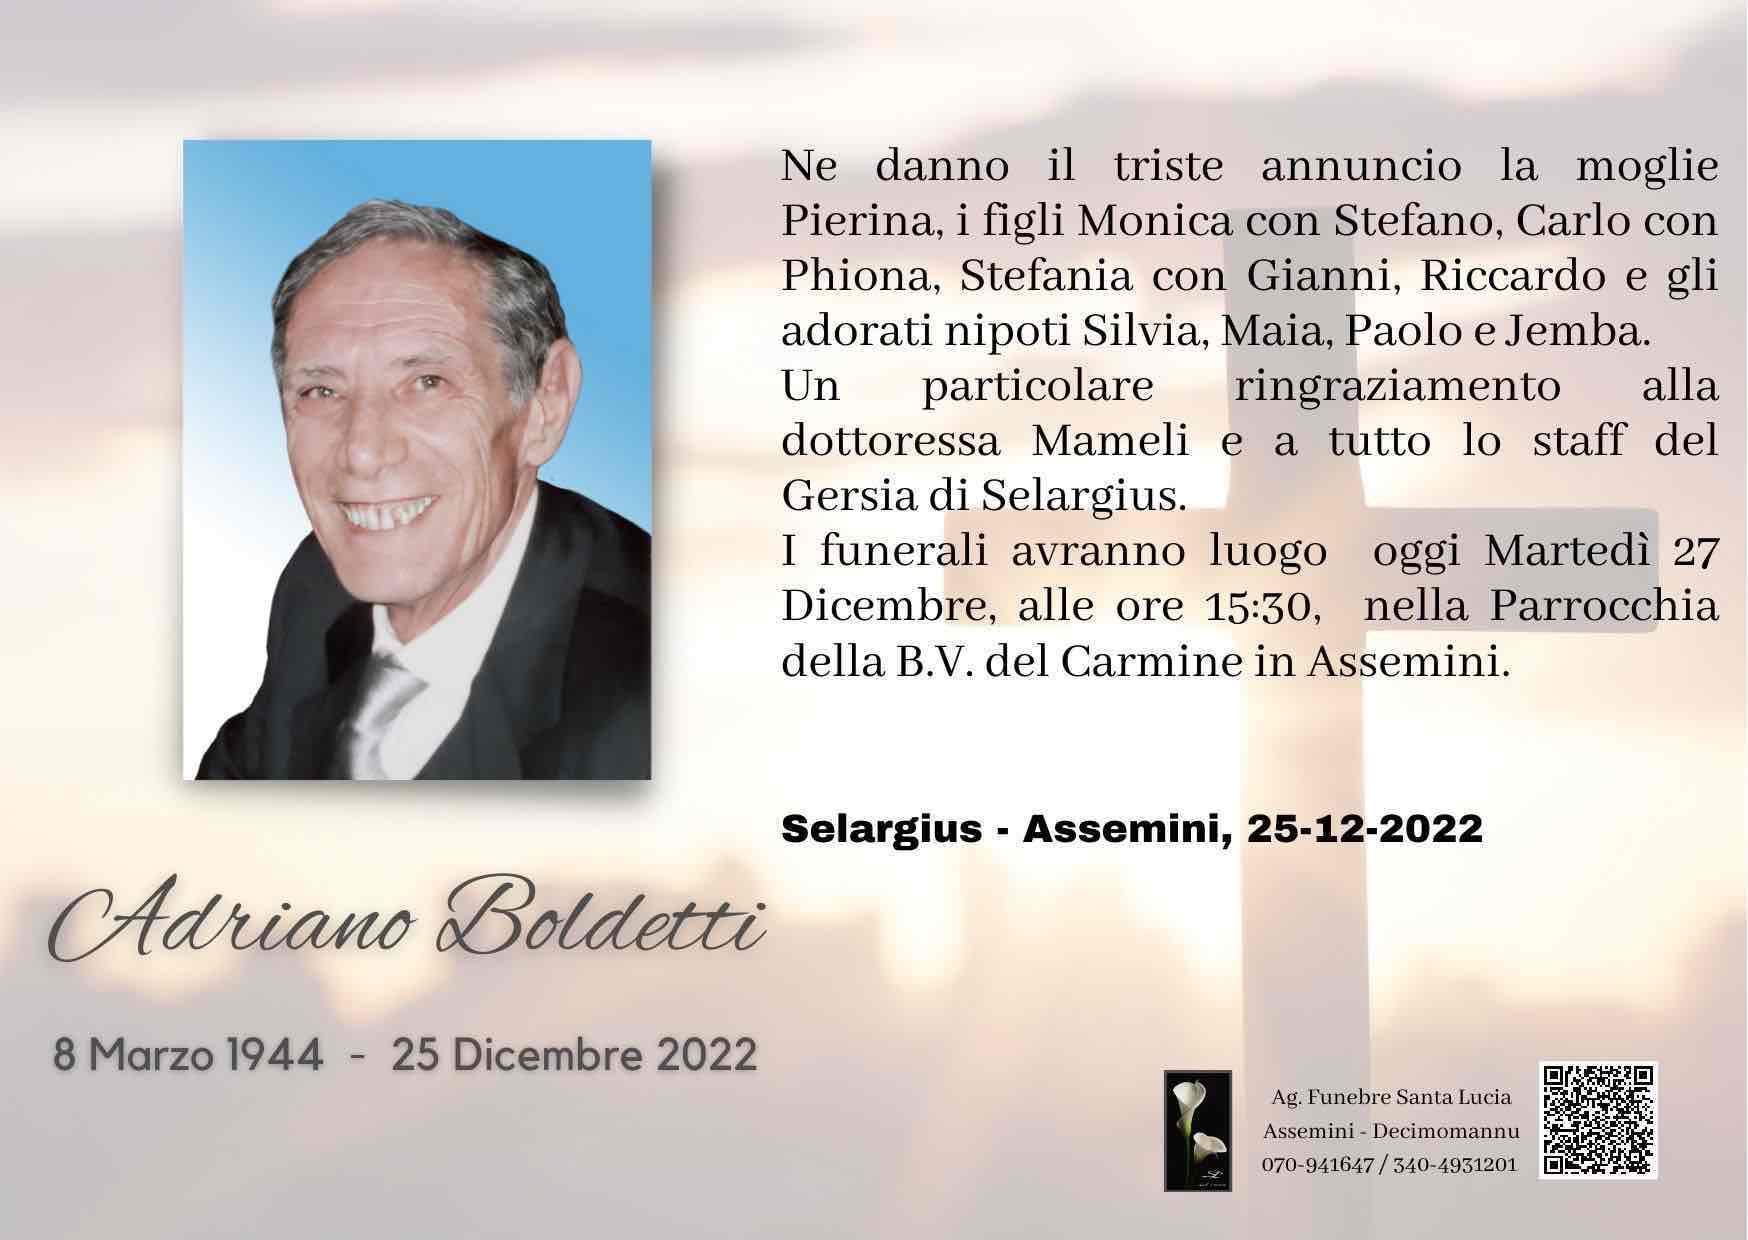 Adriano Boldetti